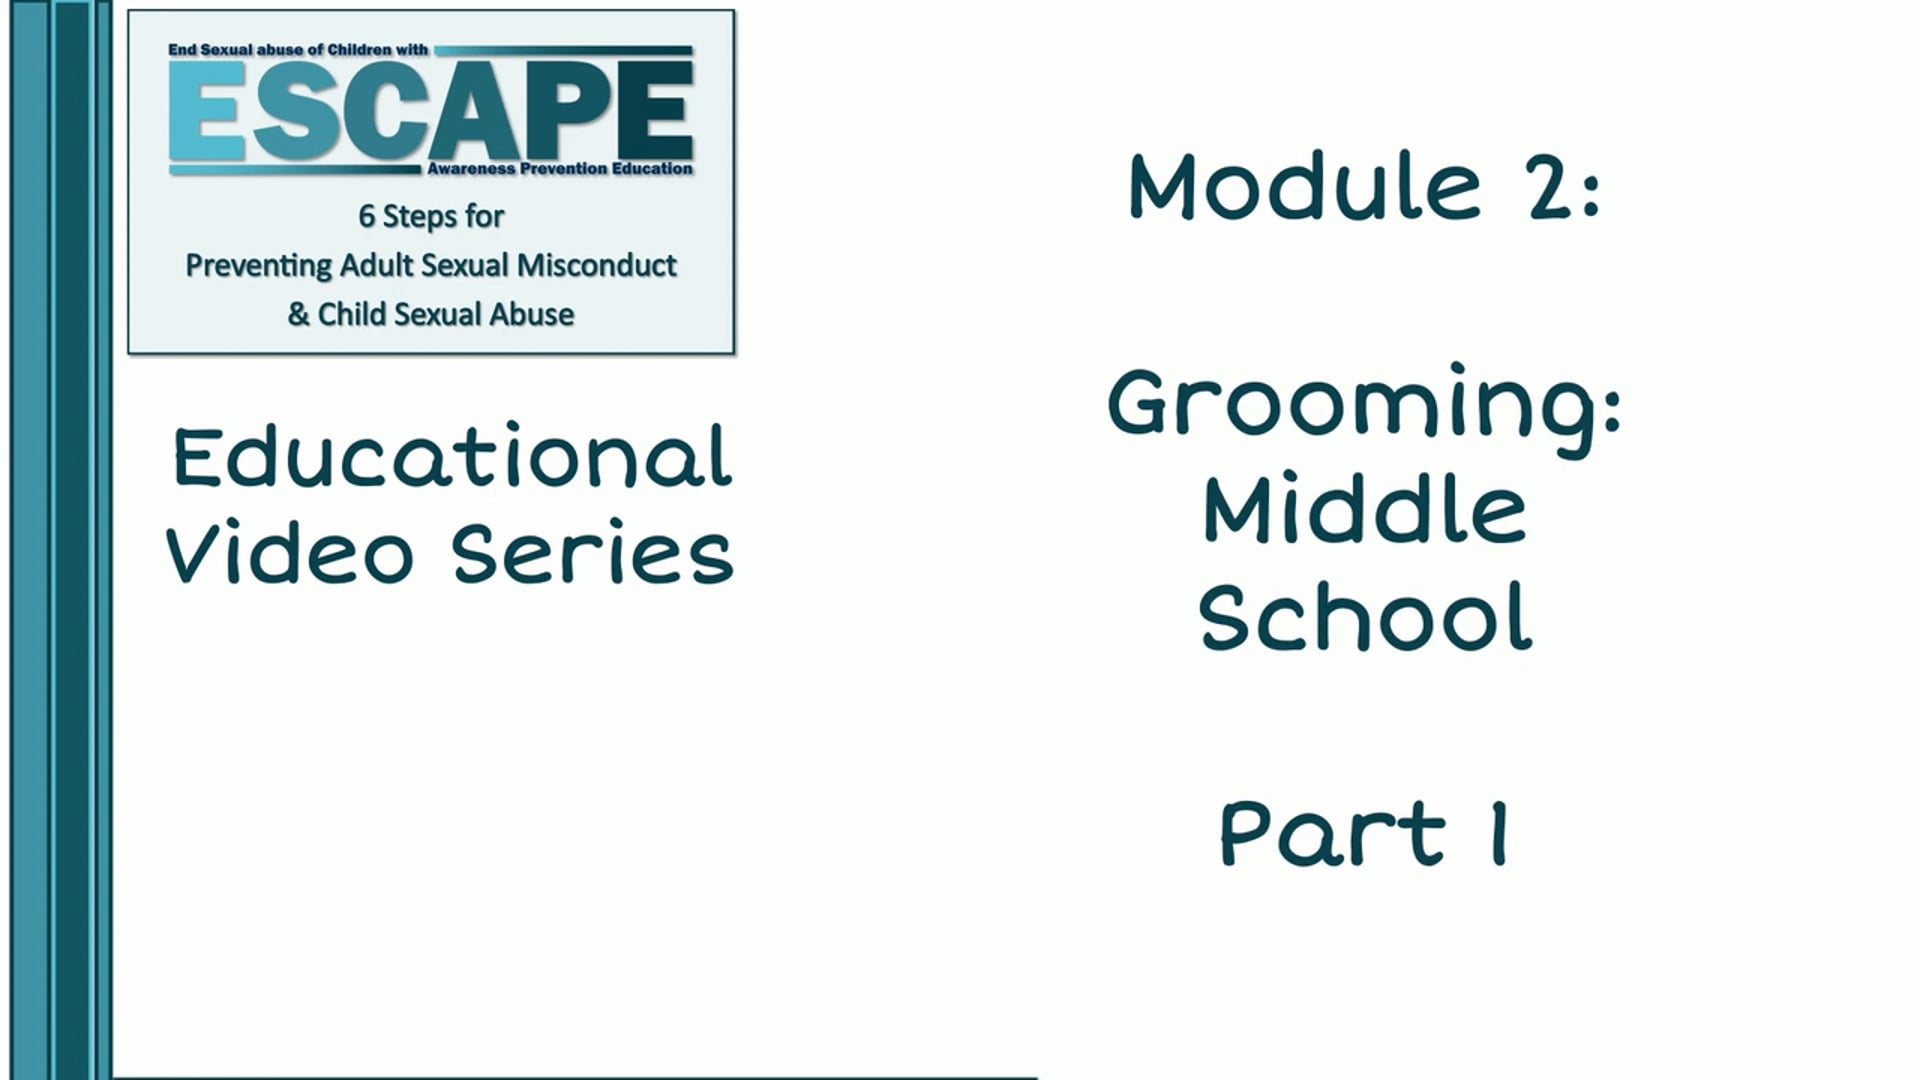 Grooming: Middle School